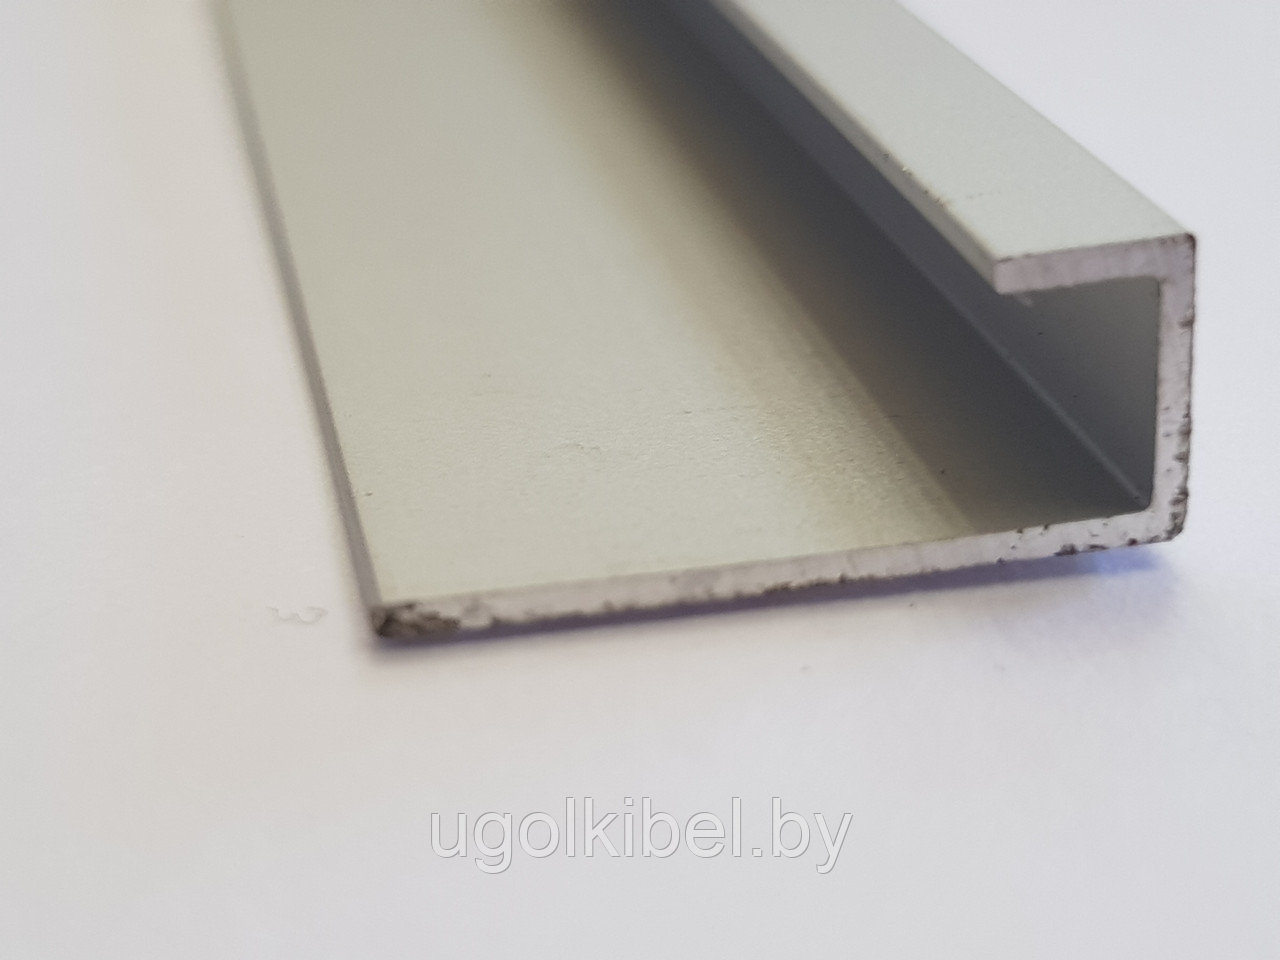  - профиль для стекла (окончание), алюминиевый 5 мм, анод. серебро .